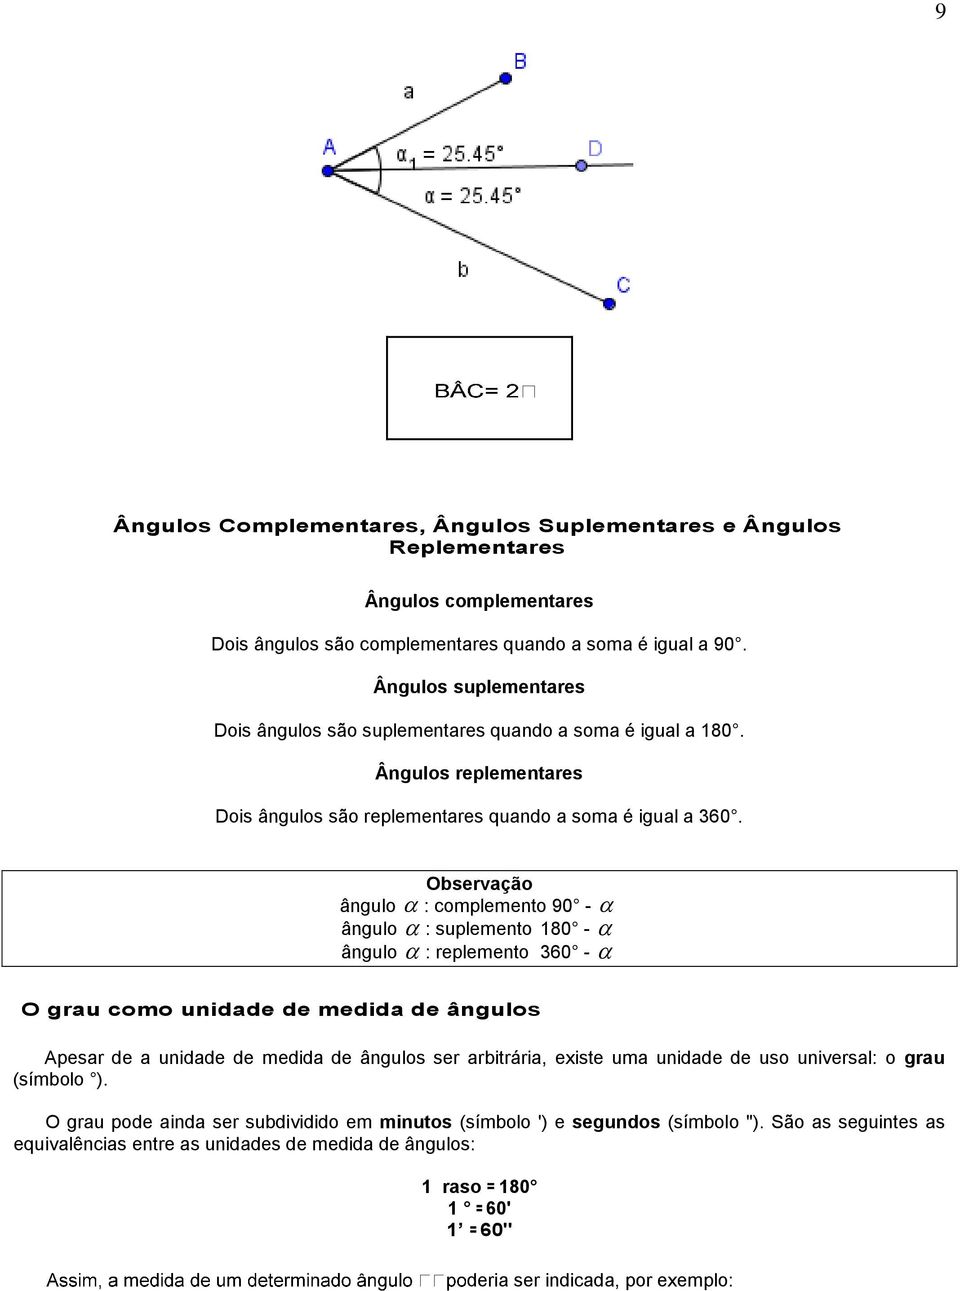 Observação ângulo : complemento 90 - ângulo : suplemento 180 - ângulo : replemento 60 - O grau como unidade de medida de ângulos Apesar de a unidade de medida de ângulos ser arbitrária, existe